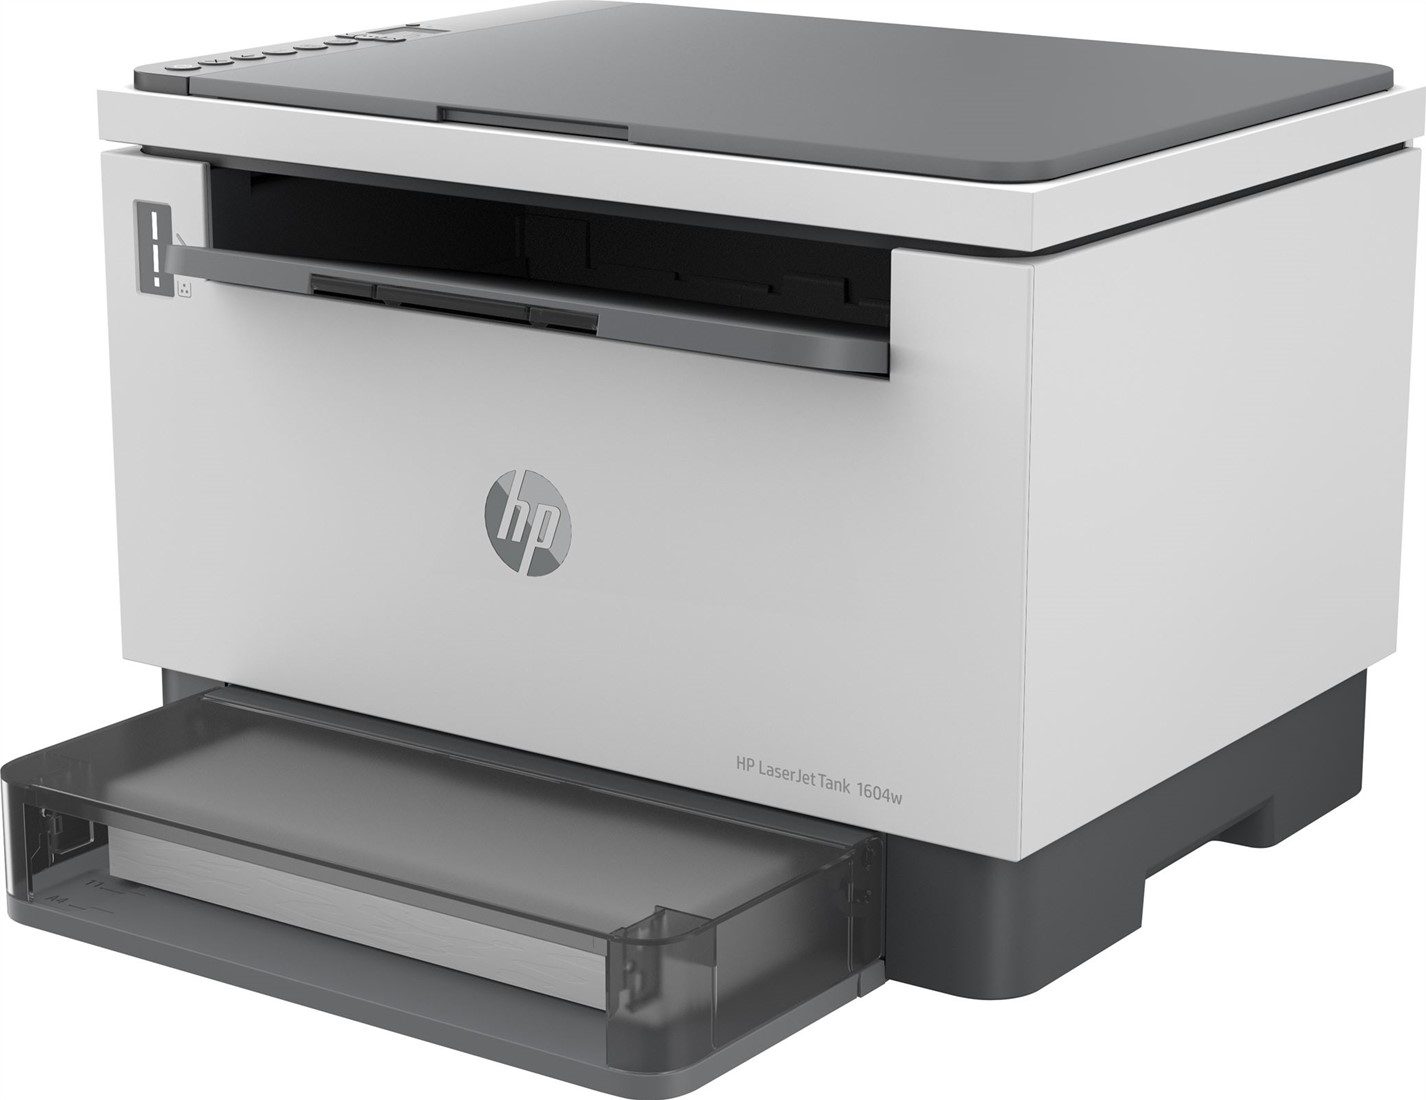 Eindeloos Noordoosten leeg HP LaserJet Tank MFP 1604w printer, Zwart-wit, Printer voor Bedrijf,  Printen, kopiëren, scannen, Scannen naar e-mail; Scannen naar e-mail/pdf;  Scannen naar PDF; Dual-band Wi-Fi bij ICT-Store.nl